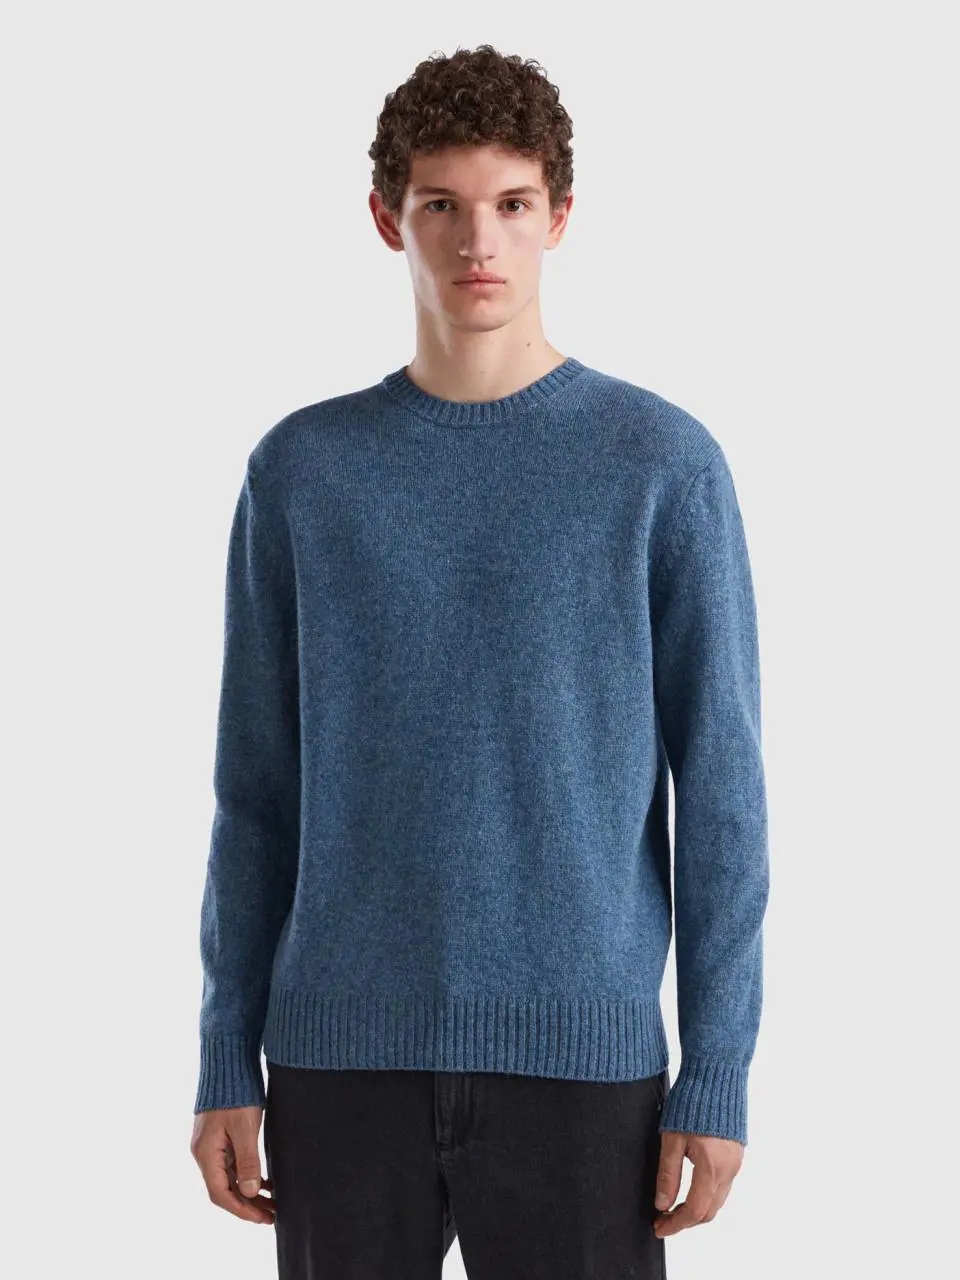 Benetton sweater in shetland wool. 1